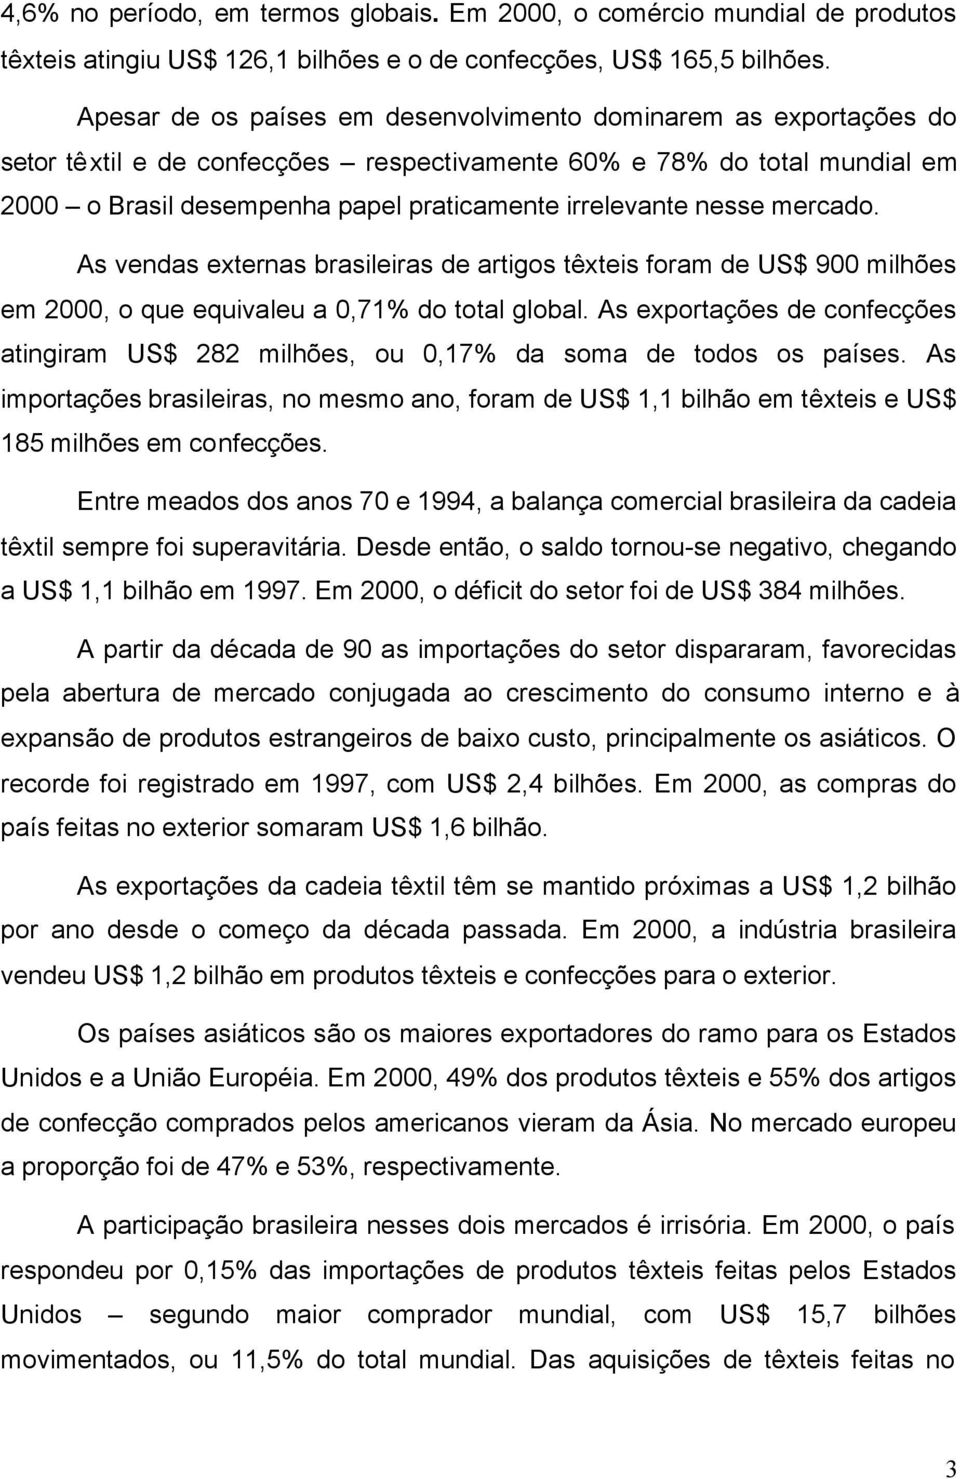 nesse mercado. As vendas externas brasileiras de artigos têxteis foram de US$ 900 milhões em 2000, o que equivaleu a 0,71% do total global.